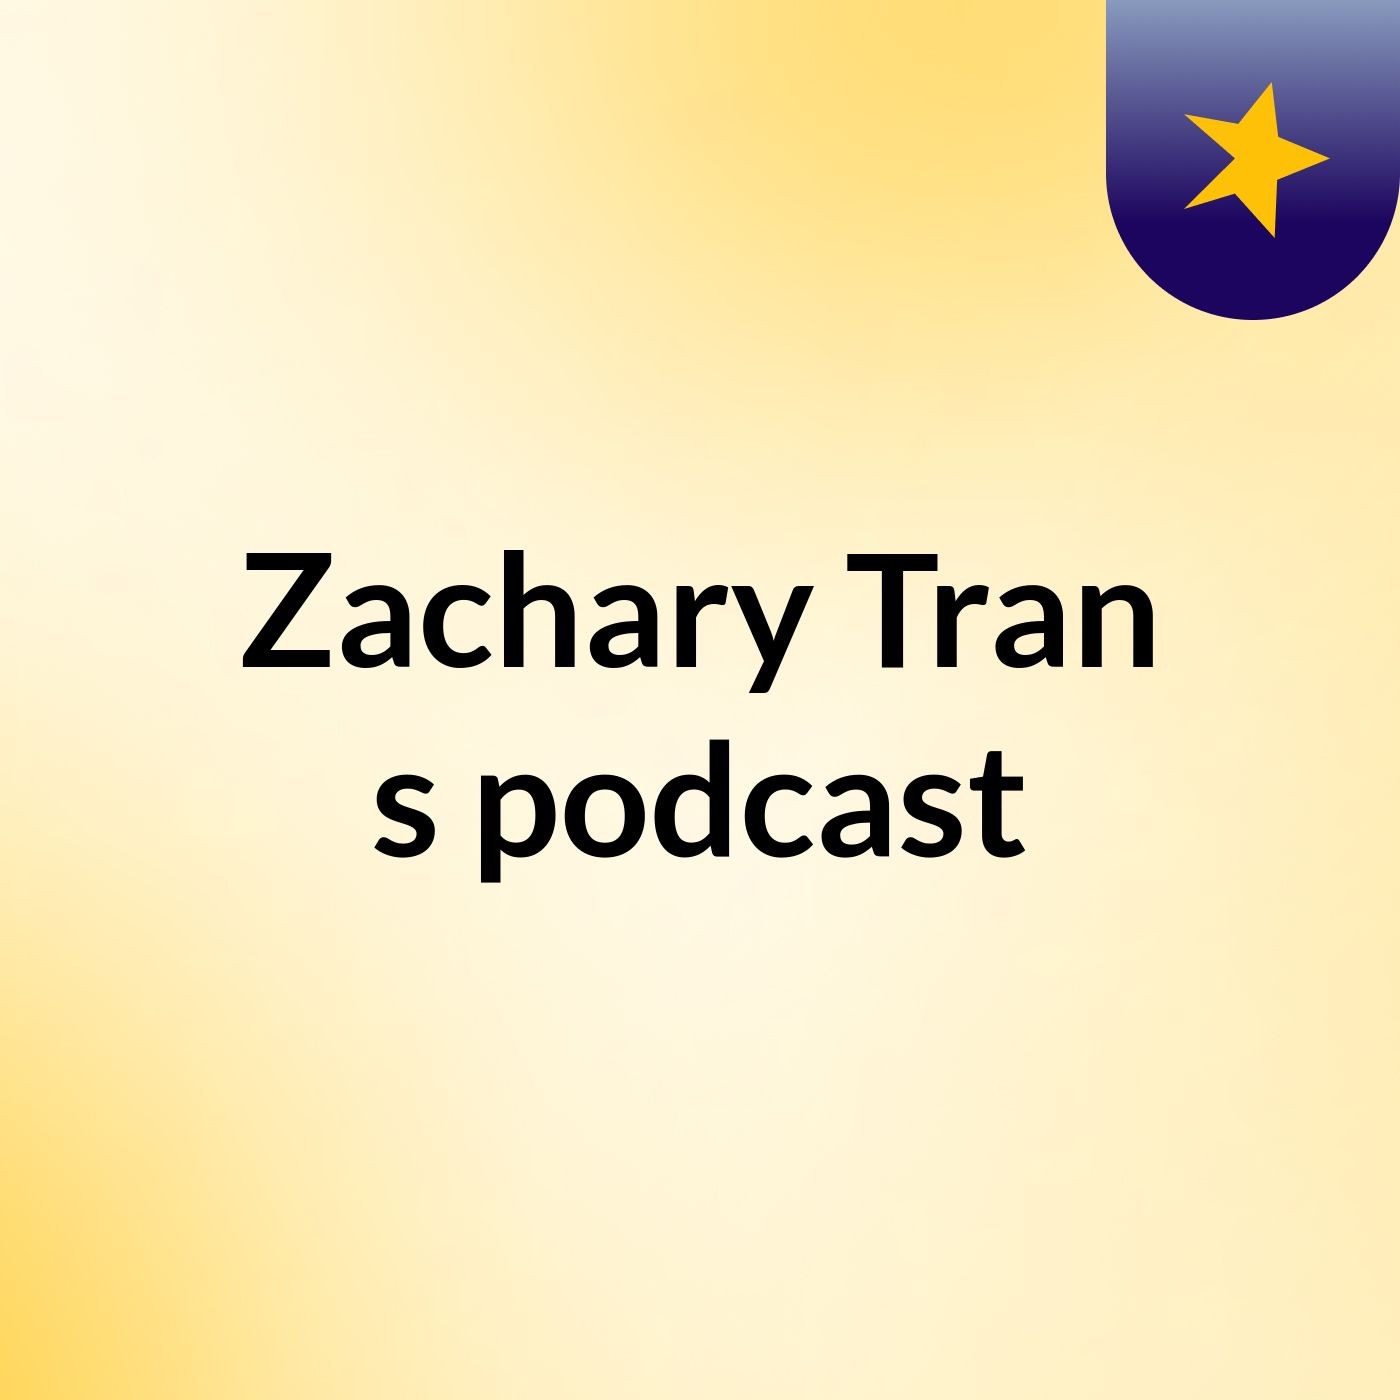 Zachary Tran's podcast